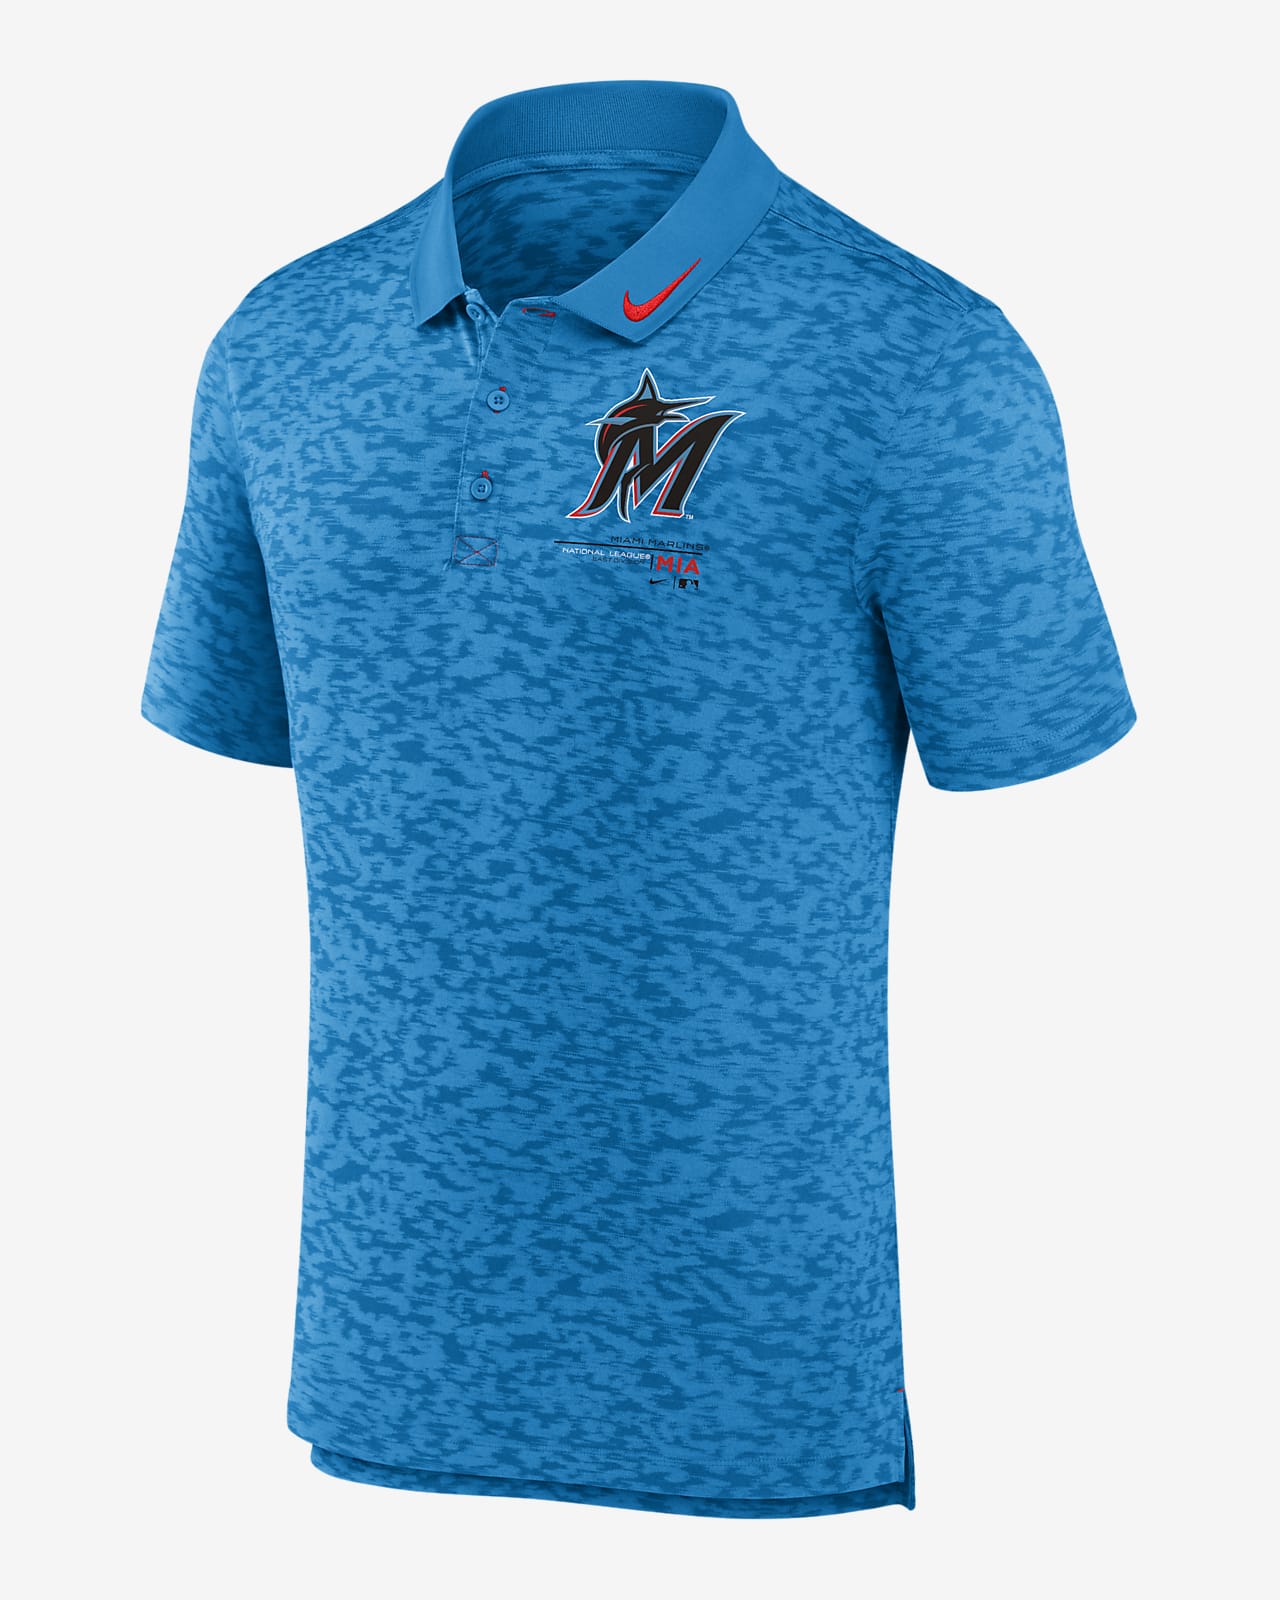 Nike Next Level (MLB Miami Marlins) Men's Polo